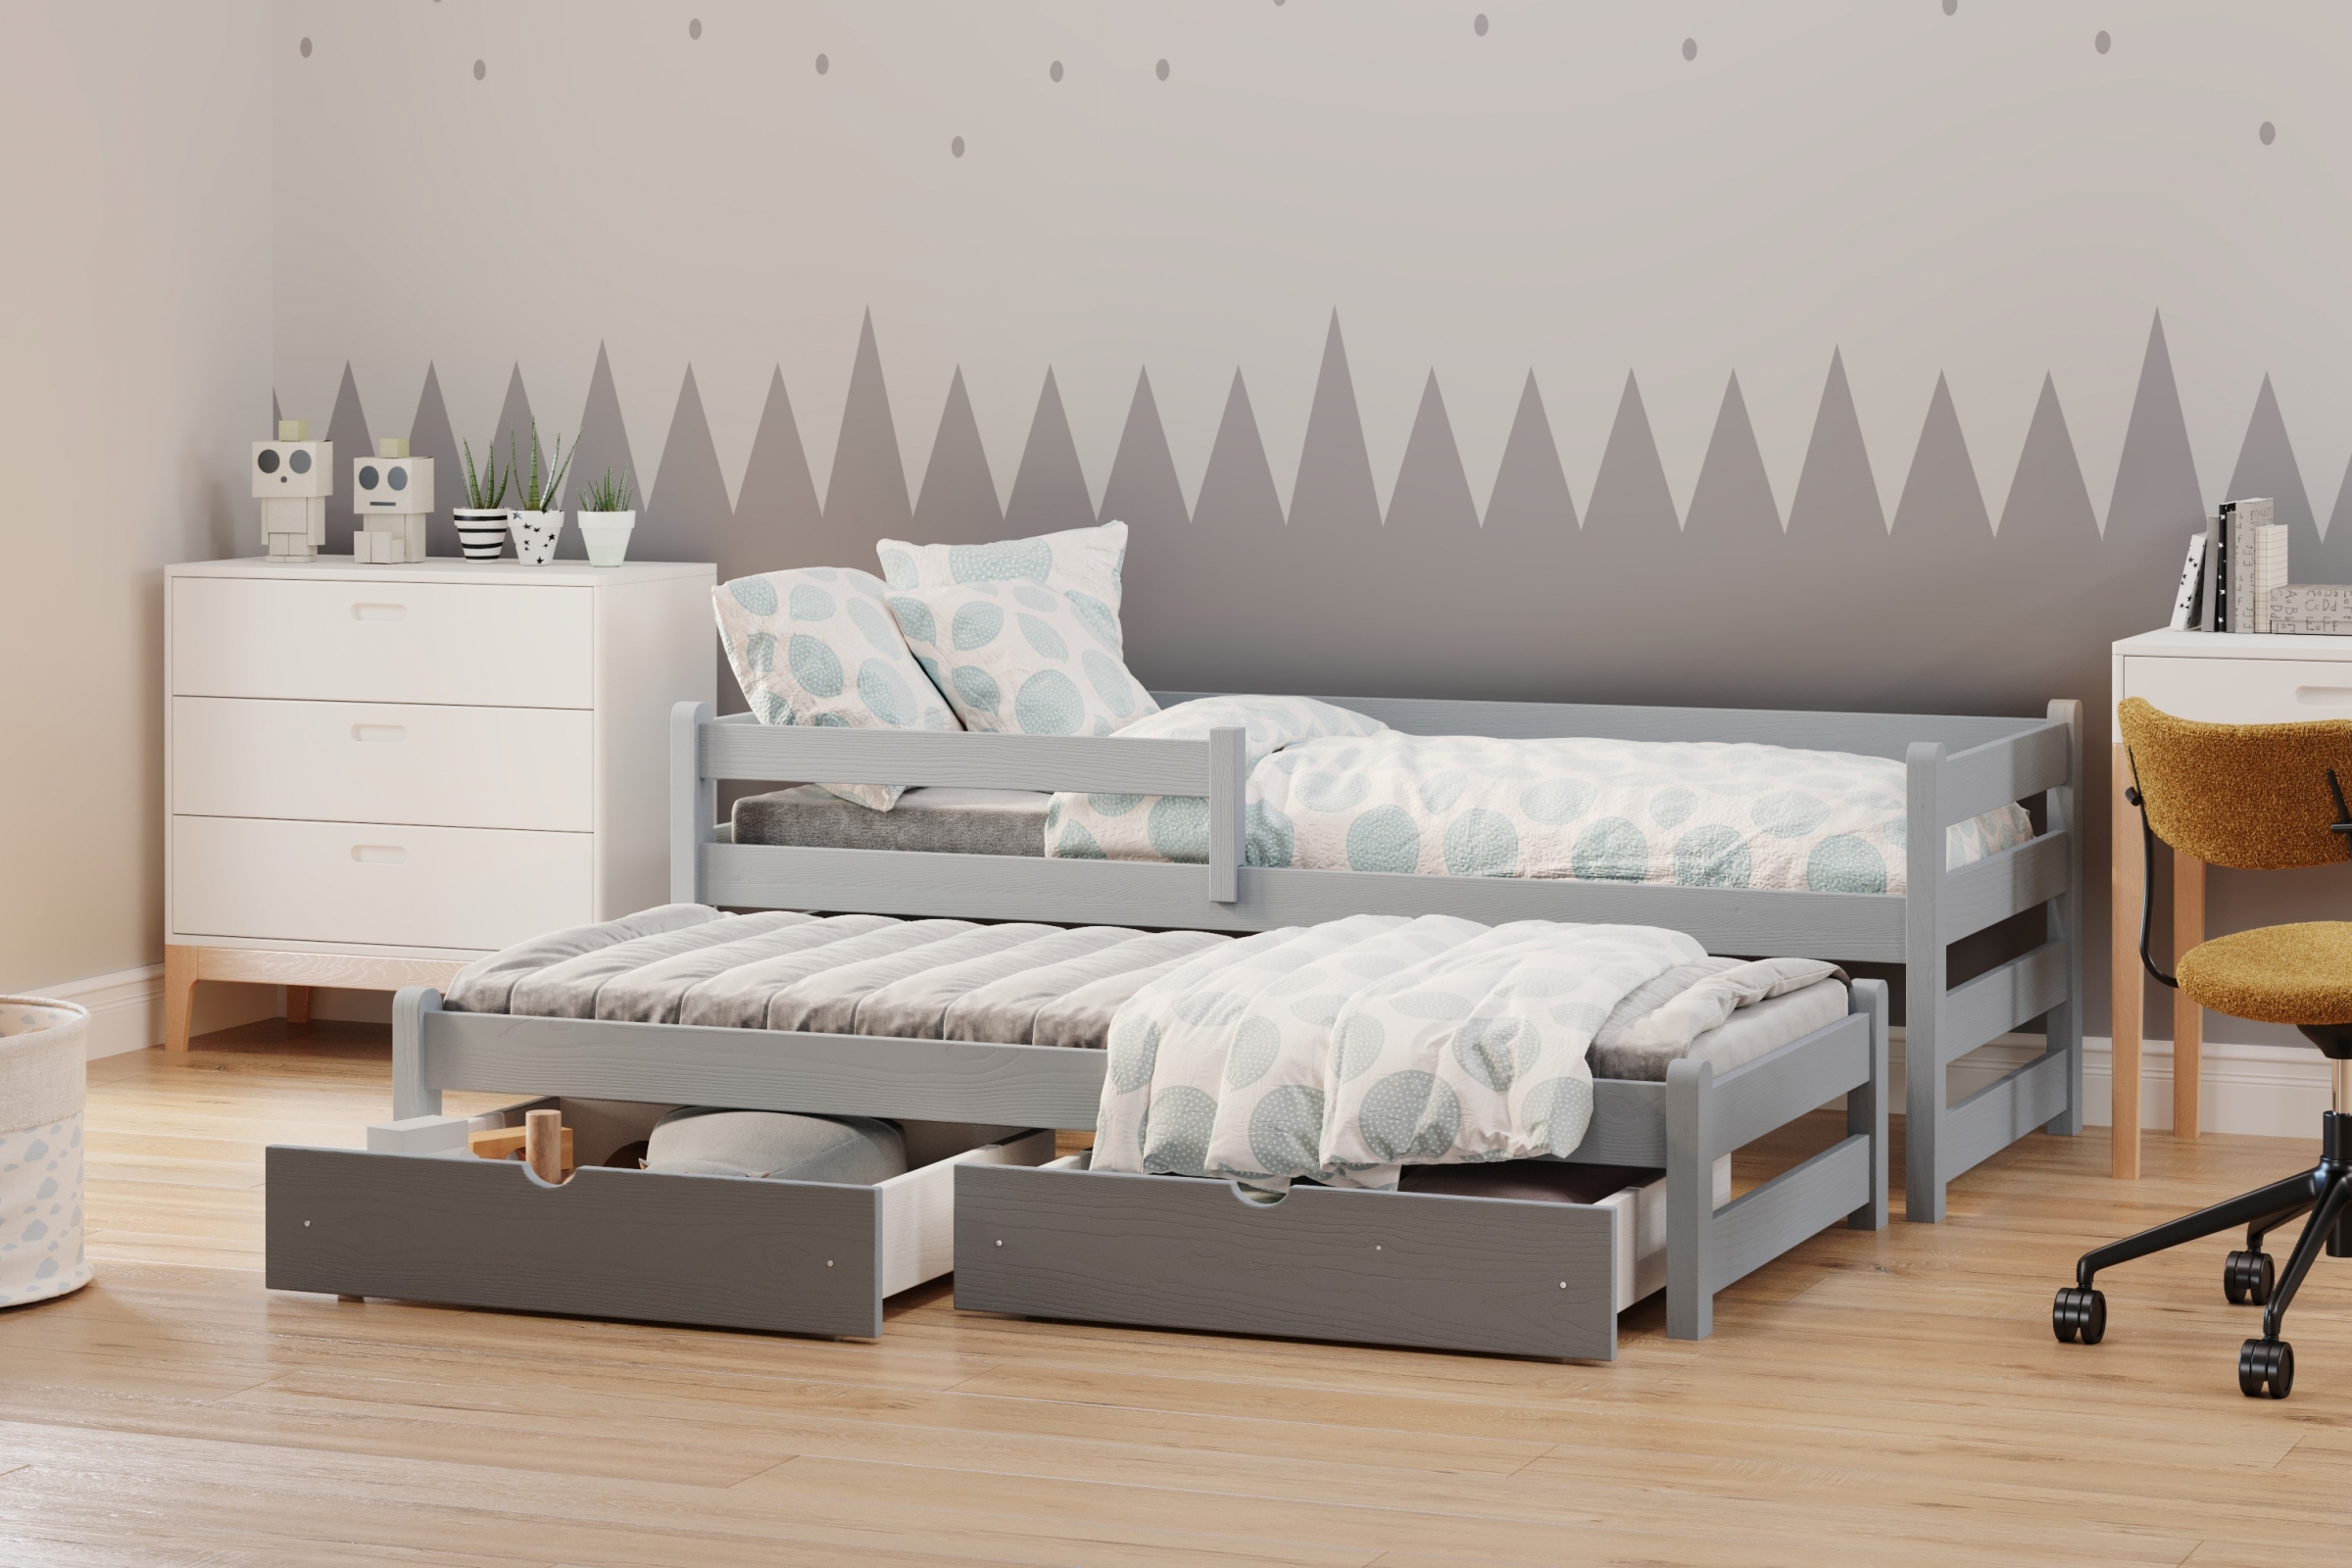 Detská posteľ prízemná s výsuvným lôžkom Alis DPV 001 - šedý, 90x180 Posteľ prízemná s výsuvným lôžkom Alis - Farba šedý - vizualizácia